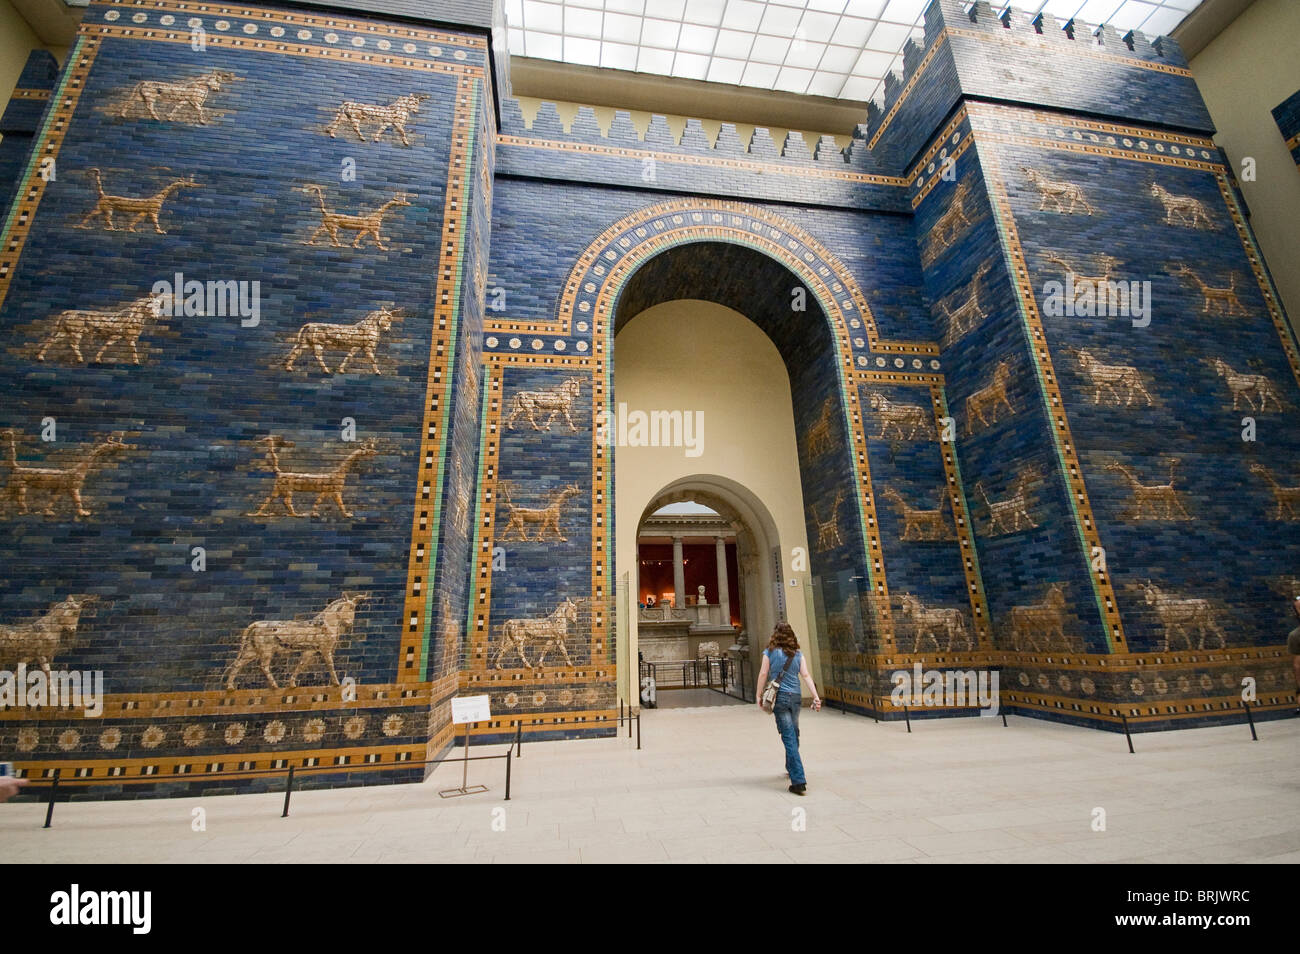 La porte d'Ishtar babylonienne, reconstruit en Musée de Pergame. Berlin, Allemagne Banque D'Images